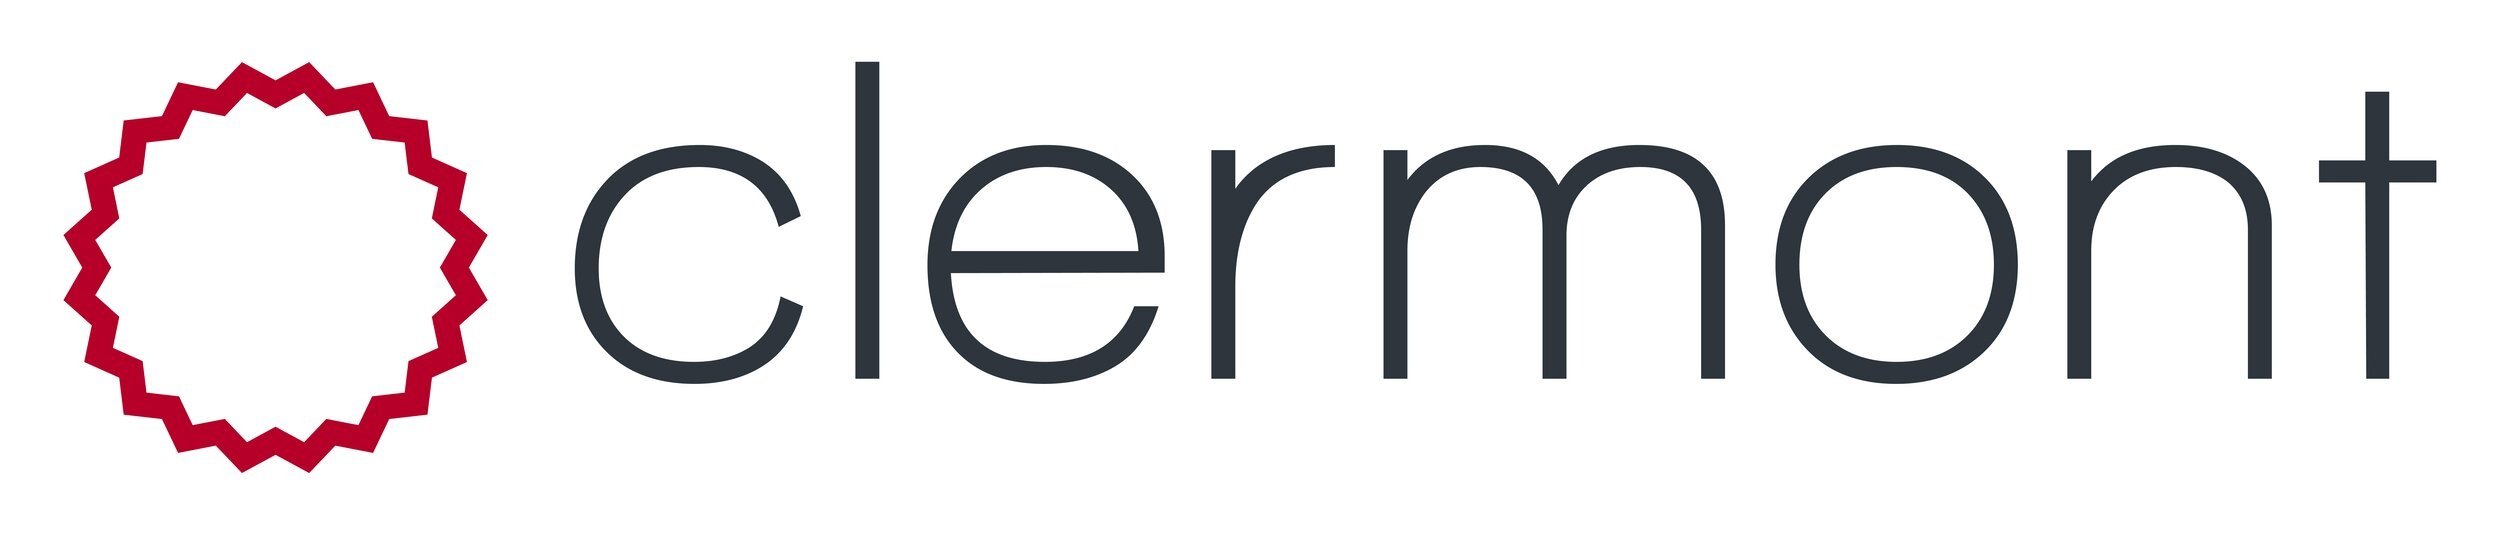 Clermont+logo.jpg